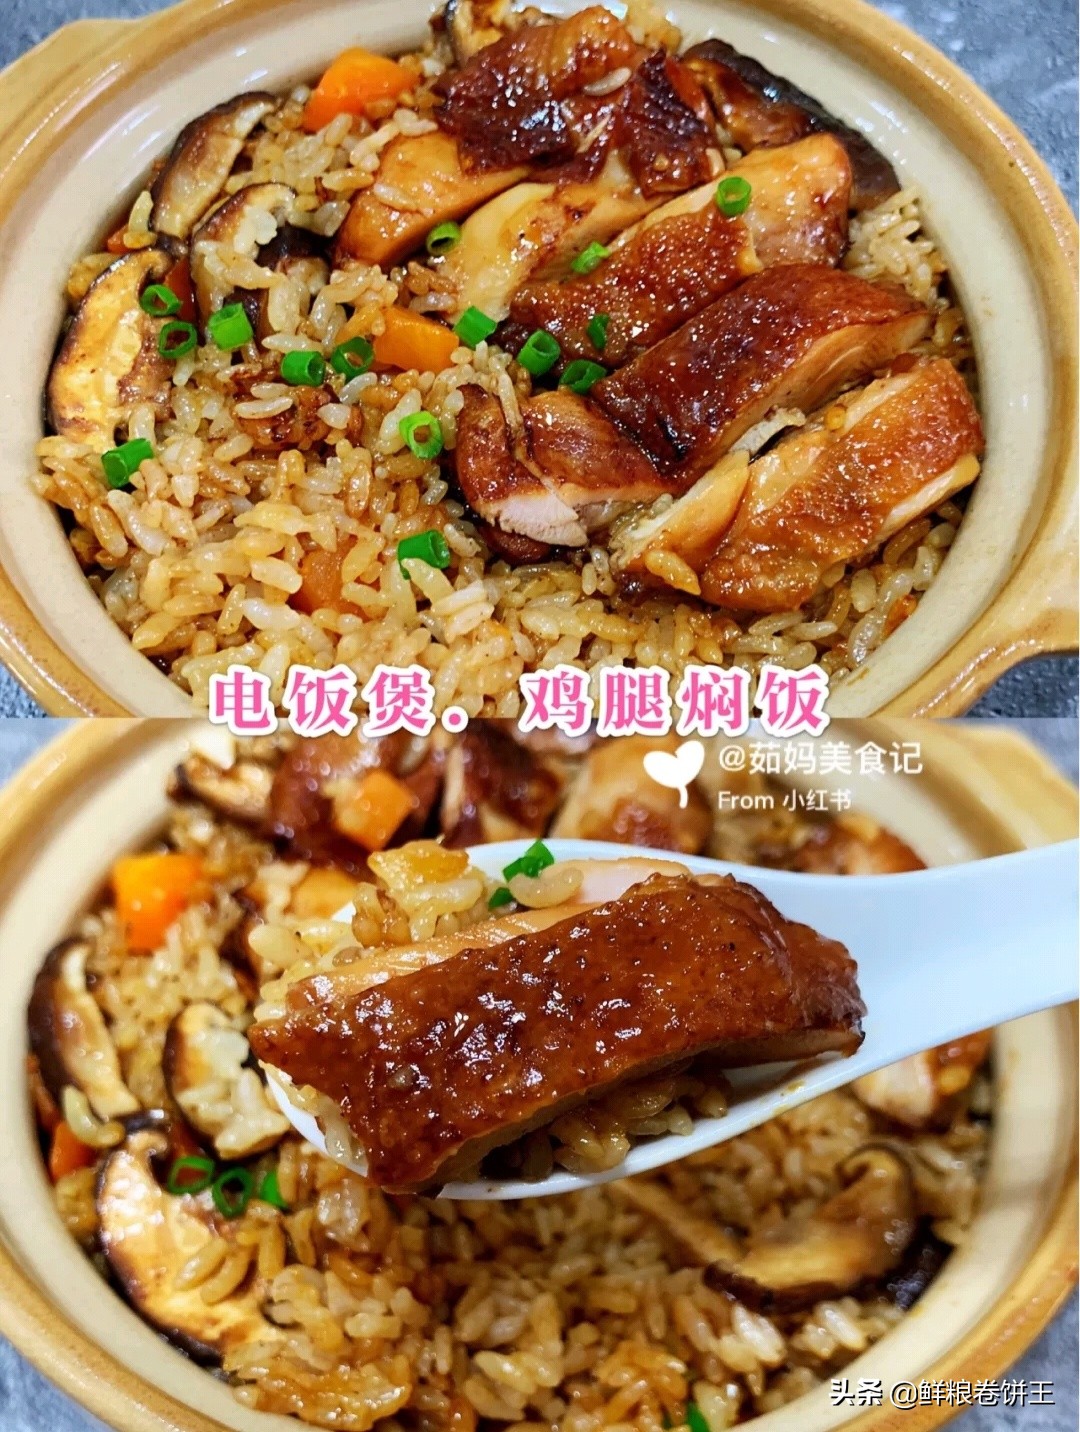 干锅焖饭图片(香气四溢美味无边独家焖饭视觉盛宴)